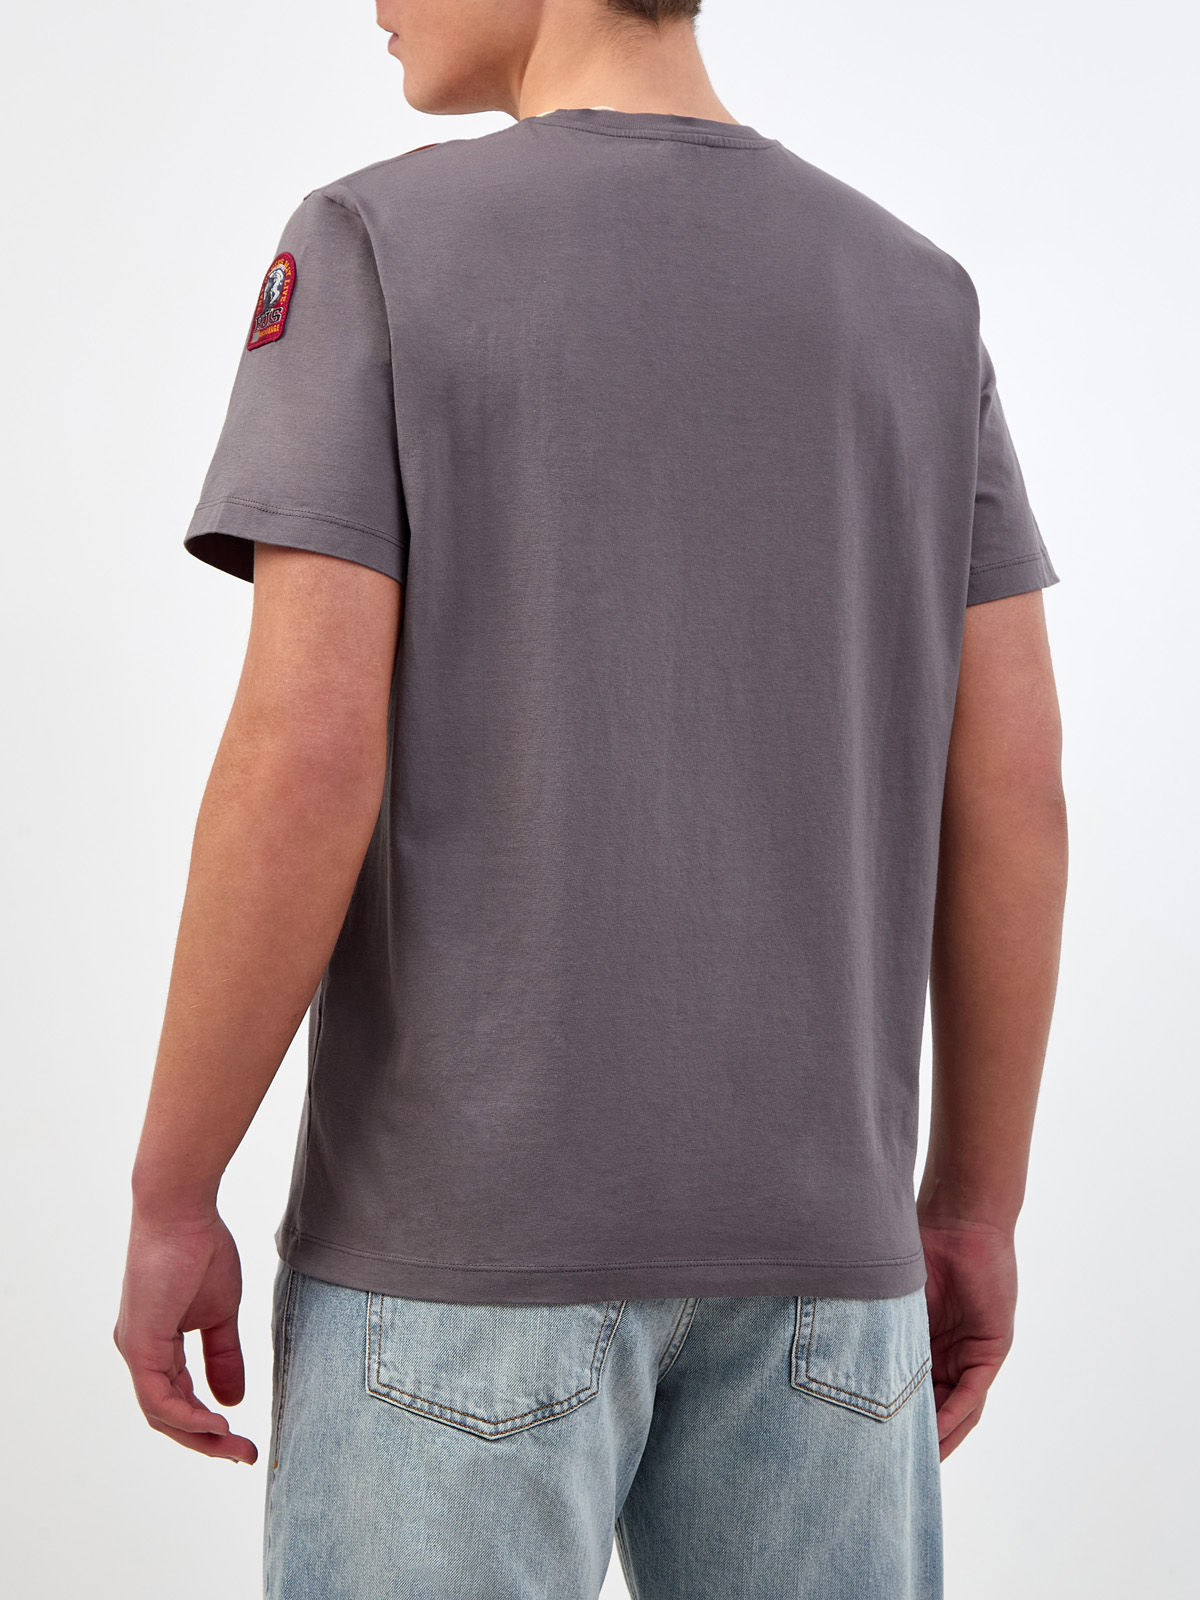 Хлопковая футболка Tape Tee с принтом и фирменной нашивкой PARAJUMPERS, цвет серый, размер M;L;XL - фото 4